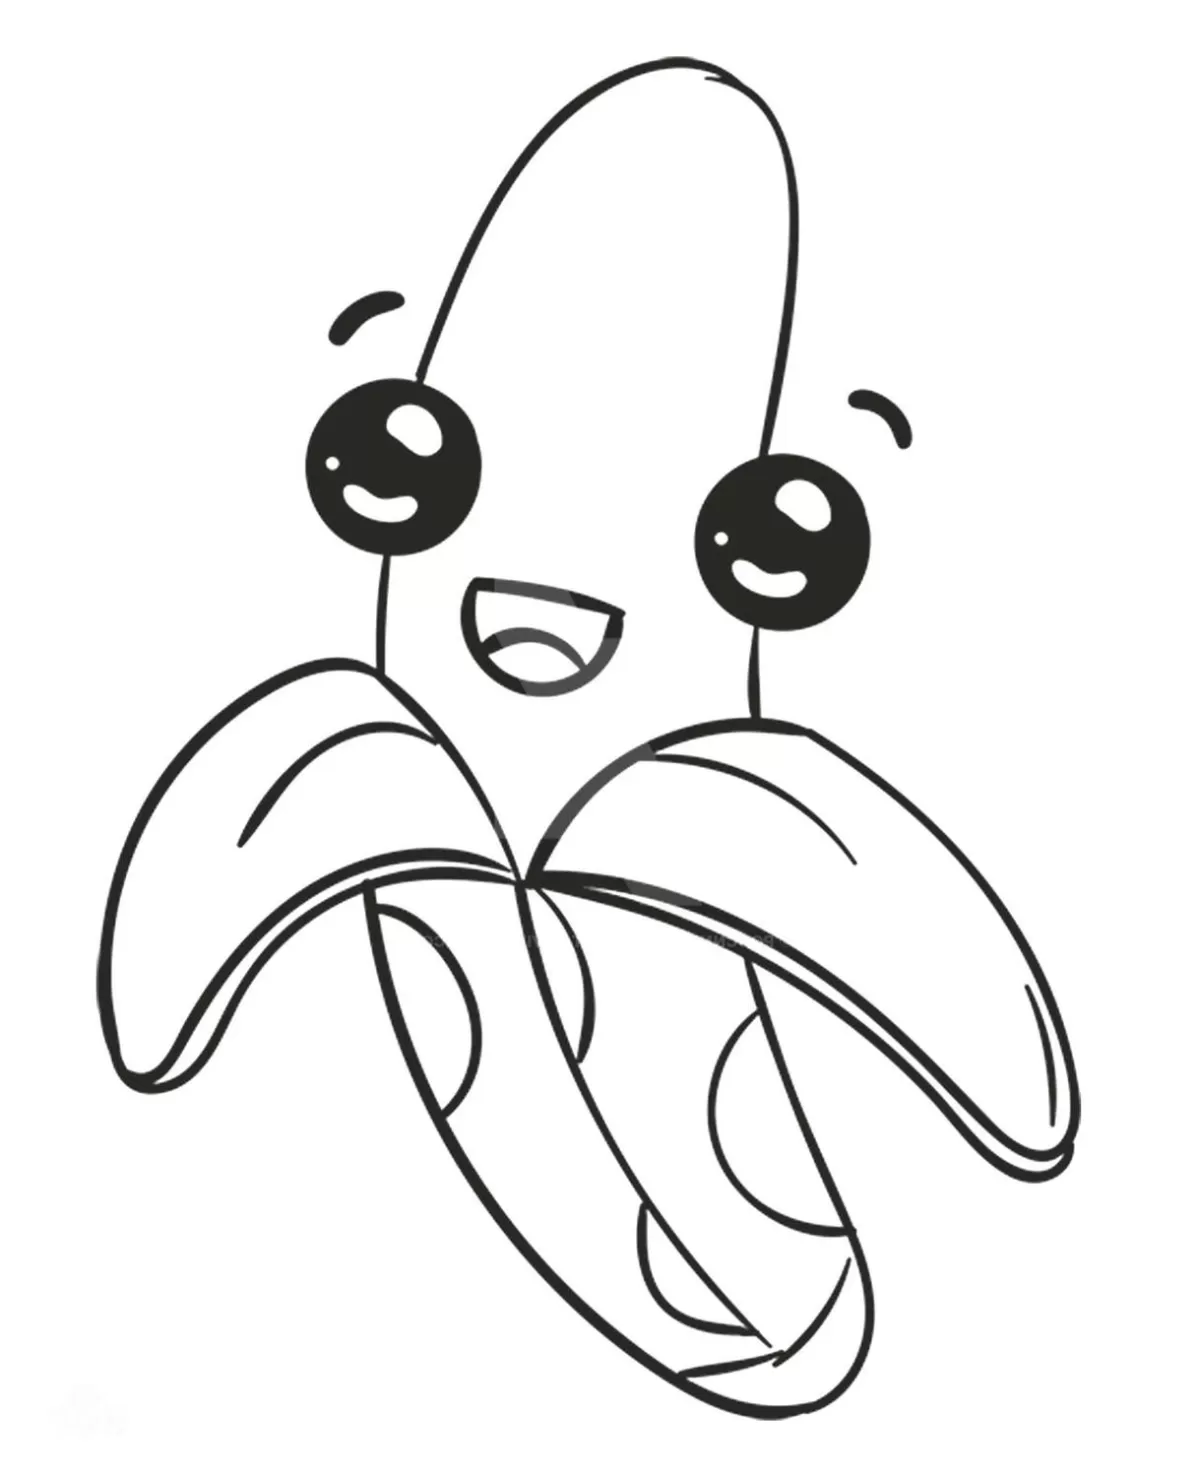 Cara de banana para pintar